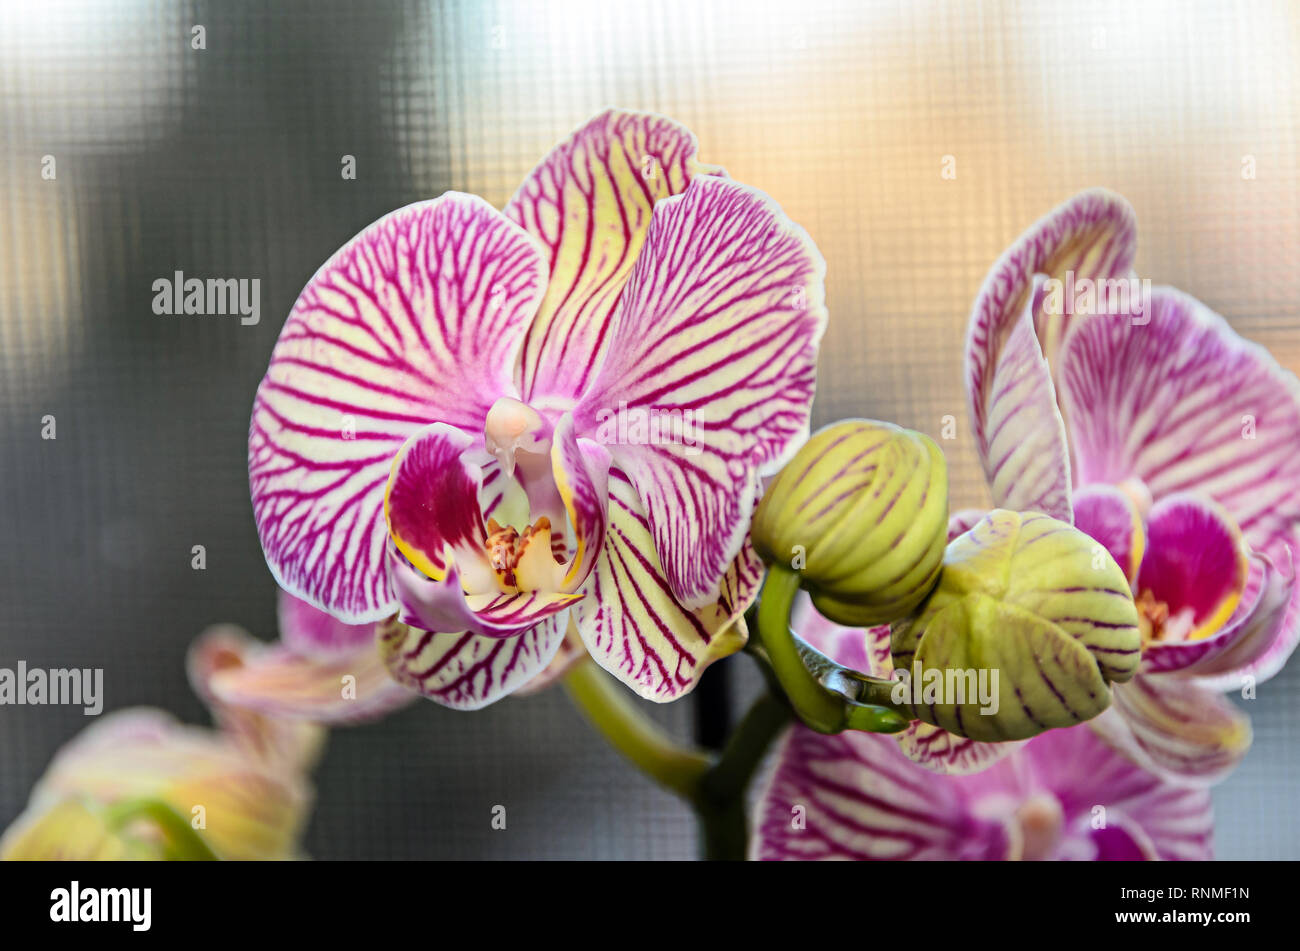 Rosa striato ramo di orchidea phal fiori e boccioli verde, lo sfondo della finestra. Foto Stock